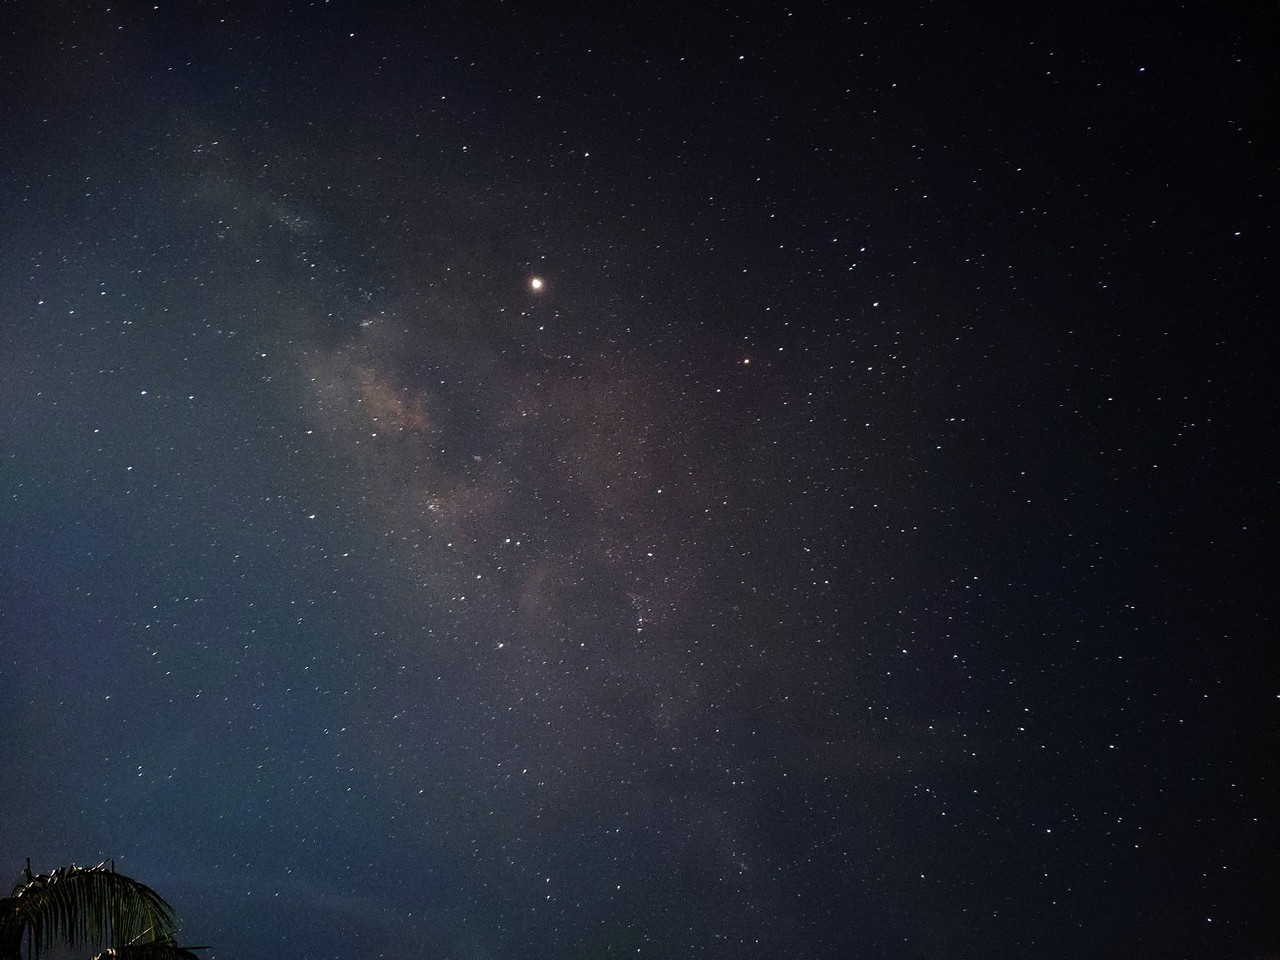 Nếu bạn mê tín hiệu vũ trụ như dải ngân hà, hãy tận dụng chiếc smartphone của mình để chụp ảnh bầu trời đêm tuyệt vời. Hãy xem những hình ảnh đậm chất khoa học viễn tưởng mà chiếc iPhone của bạn có thể chụp được.